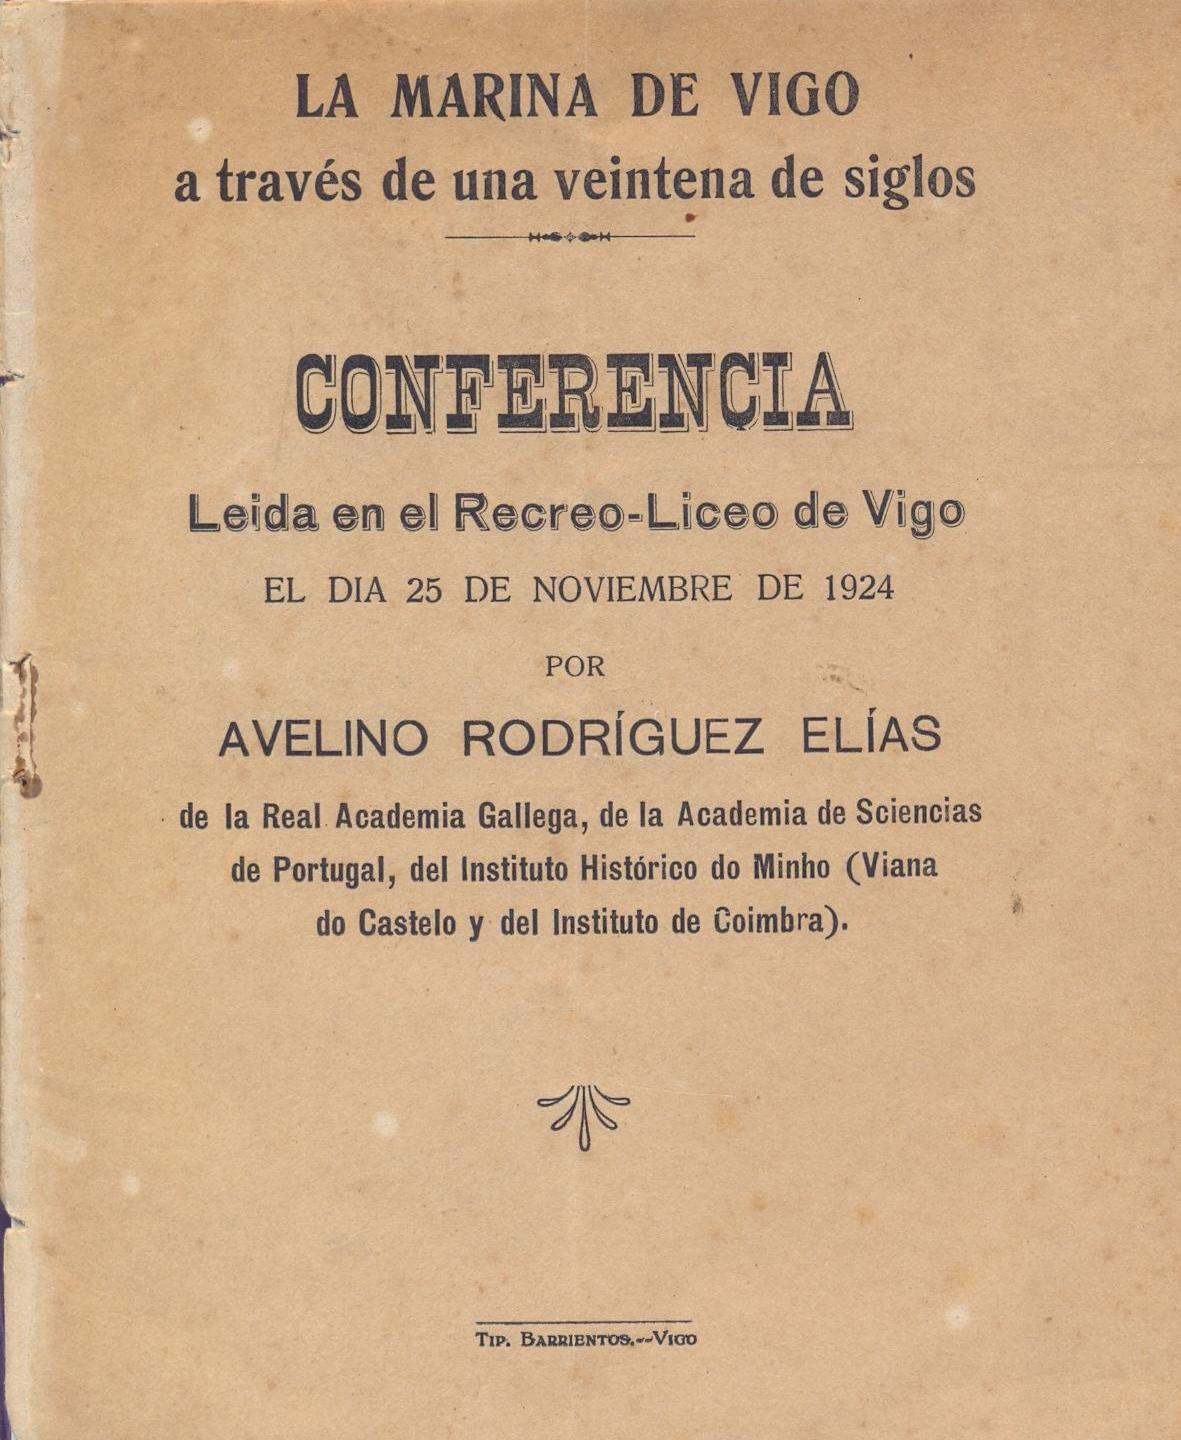 Avelino Rodríguez Elías resaltó en una Conferencia pronunciada en el desaparecido Liceo de Vigo, la sagacidad y el valor del puñado de vigueses que capturaron el Atlas en julio de 1808.